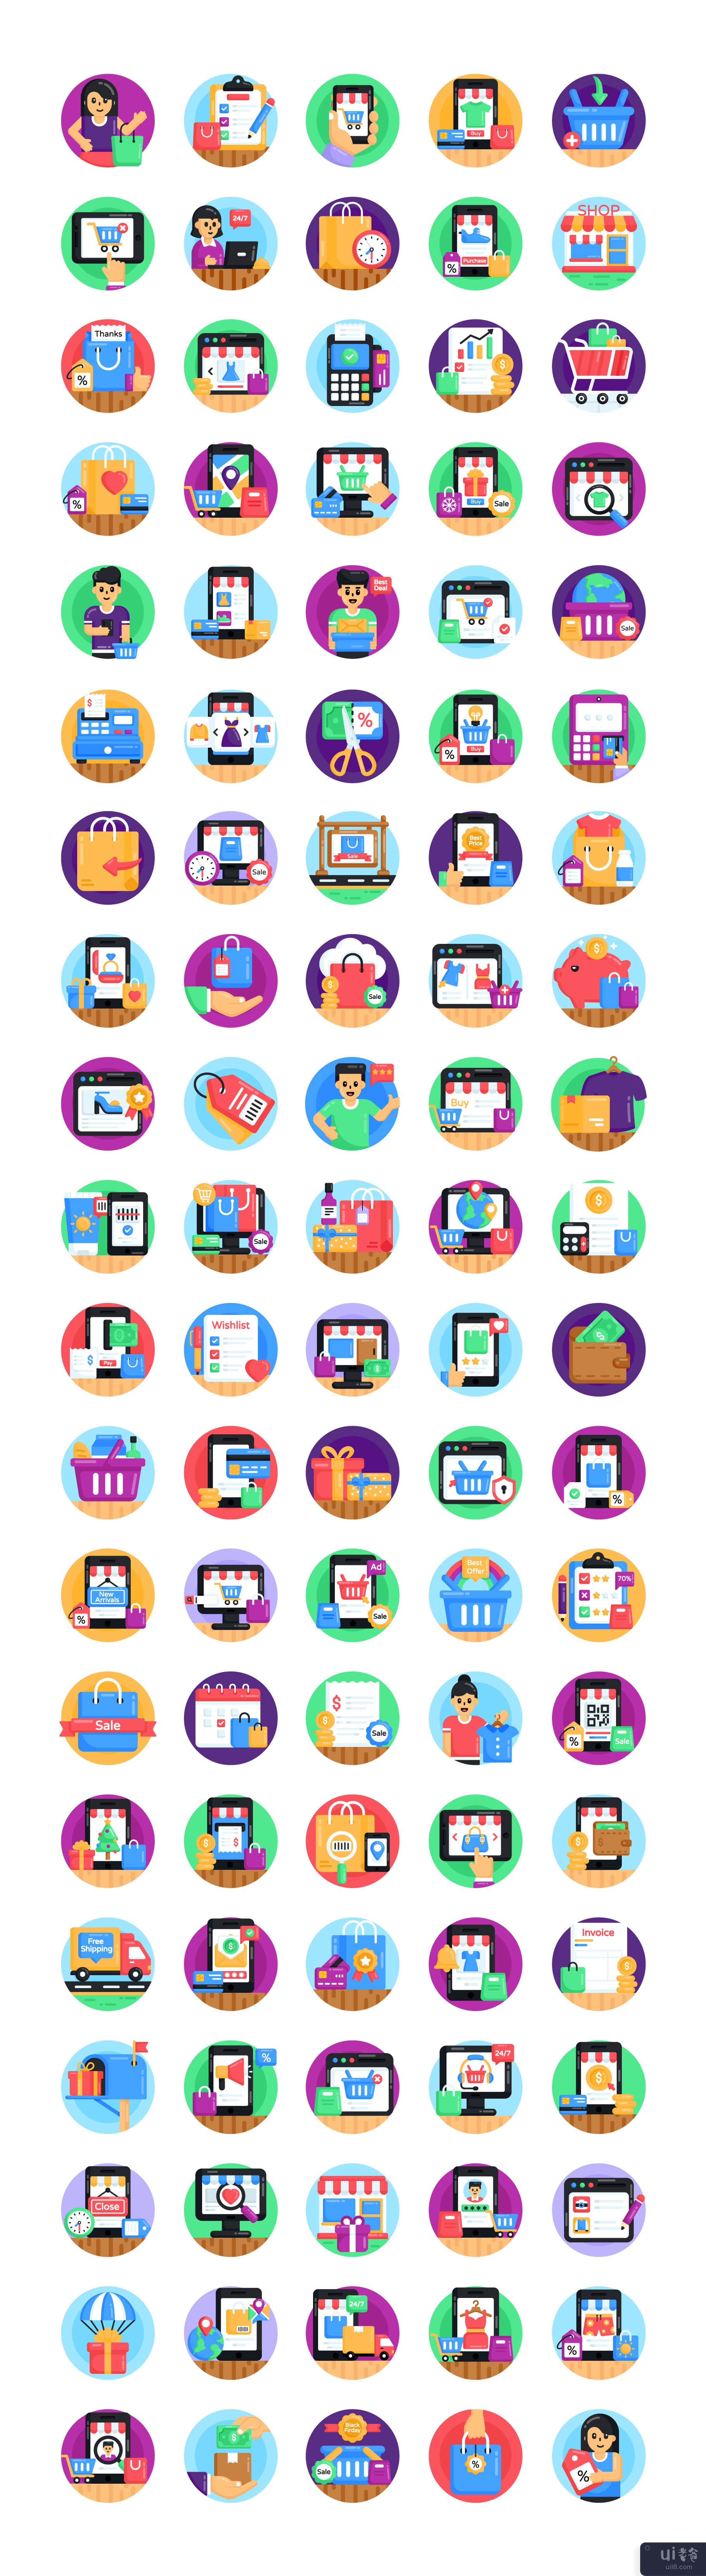 100 个购物和电子商务图标(100 Shopping and Ecommerce Icons)插图